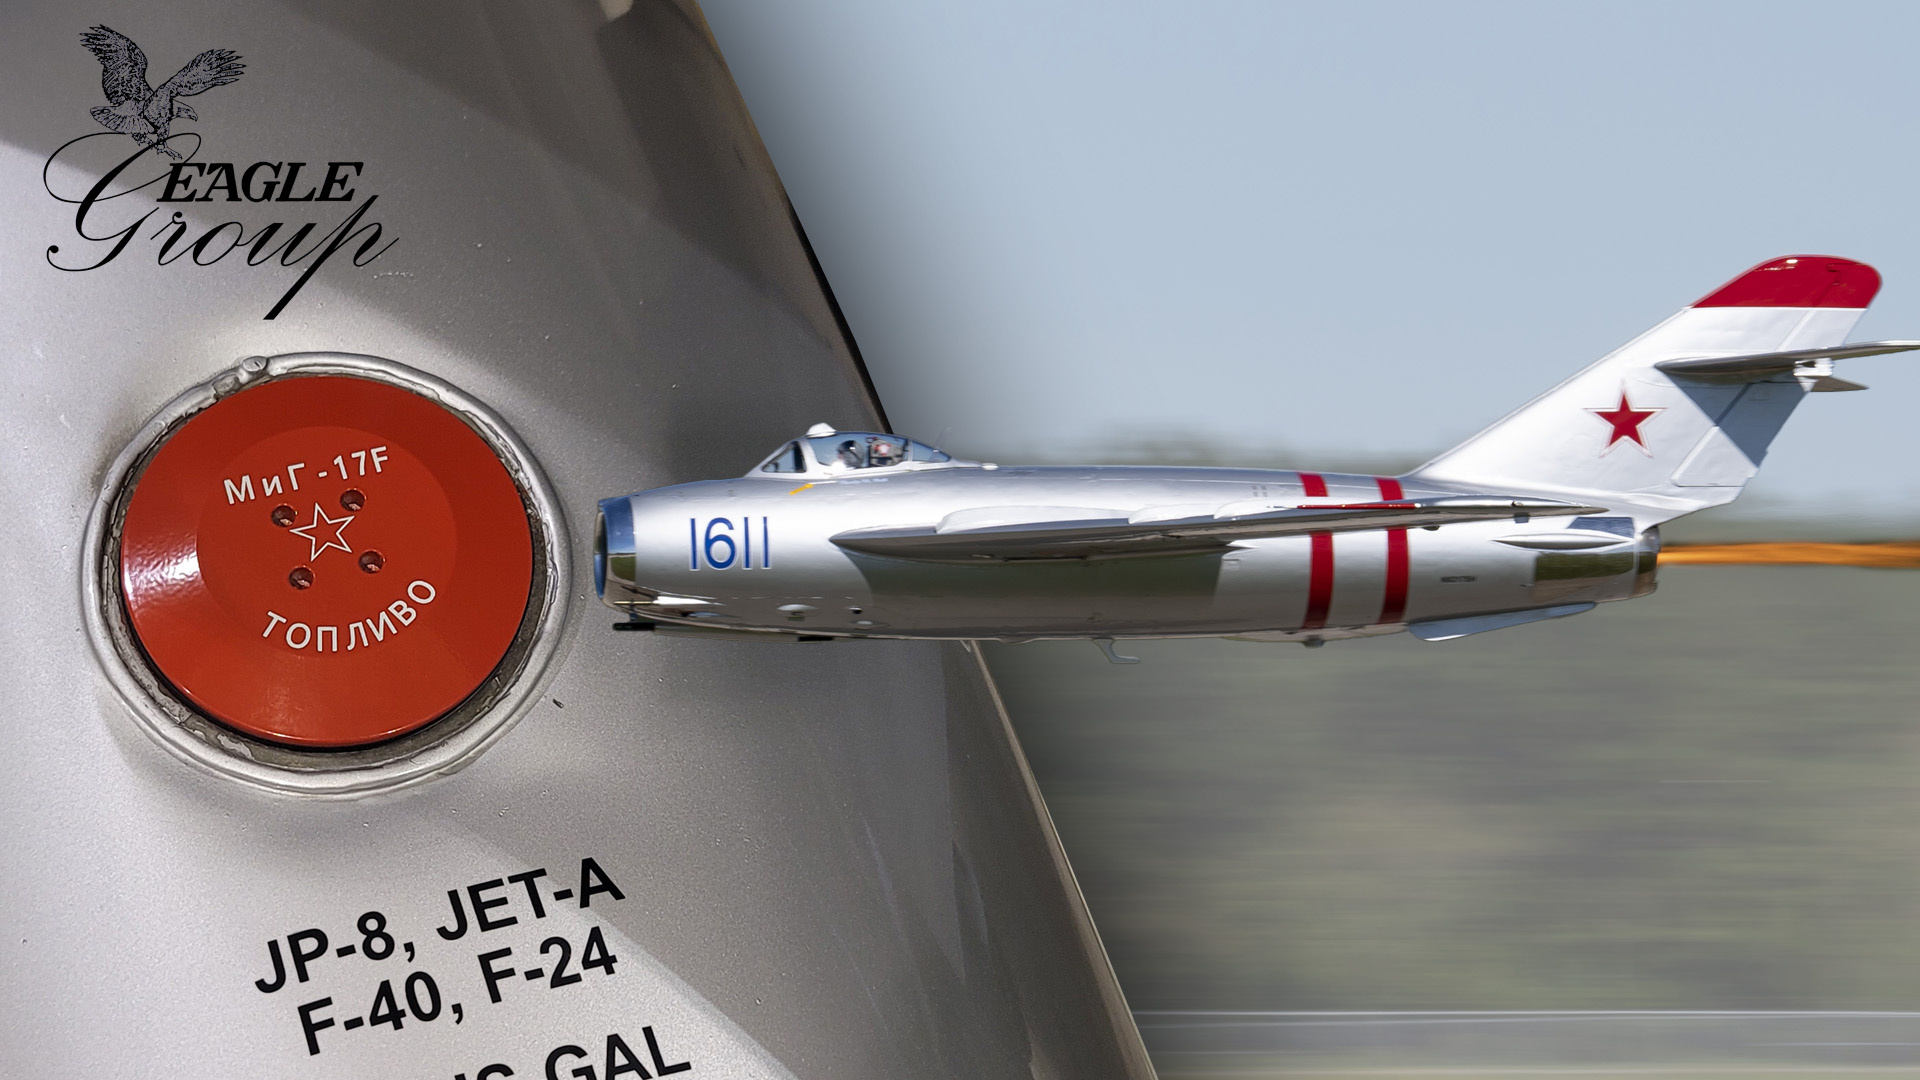 MiG fuel cap, drop tank and MiG 17F flying